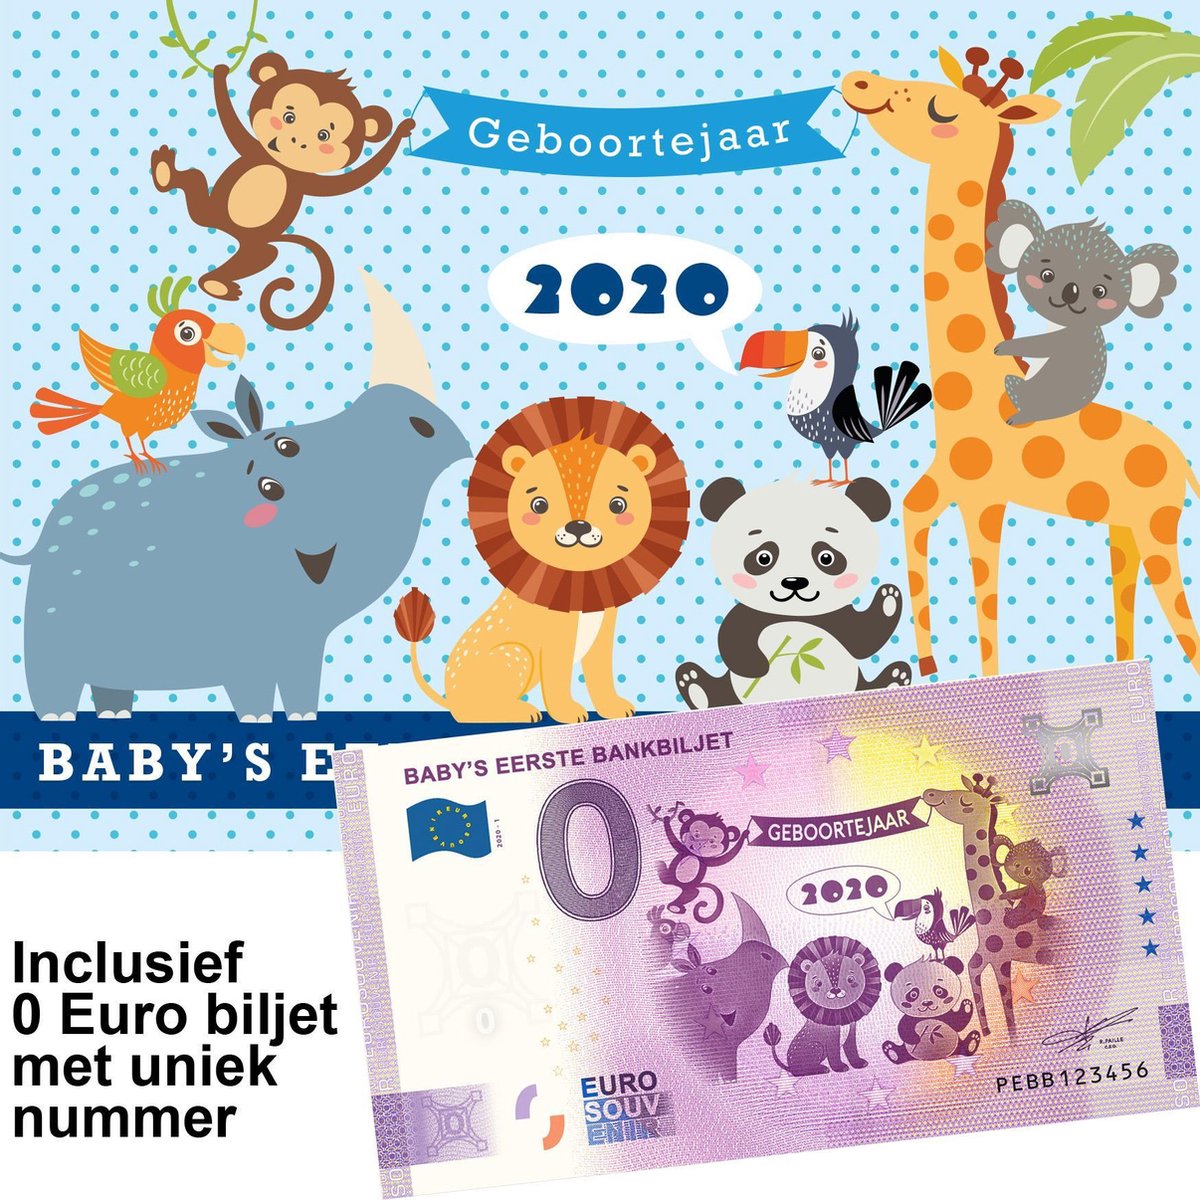 0 Euro biljet Nederland 2020 - Baby's eerste bankbiljet in cadeauverpakking jongen